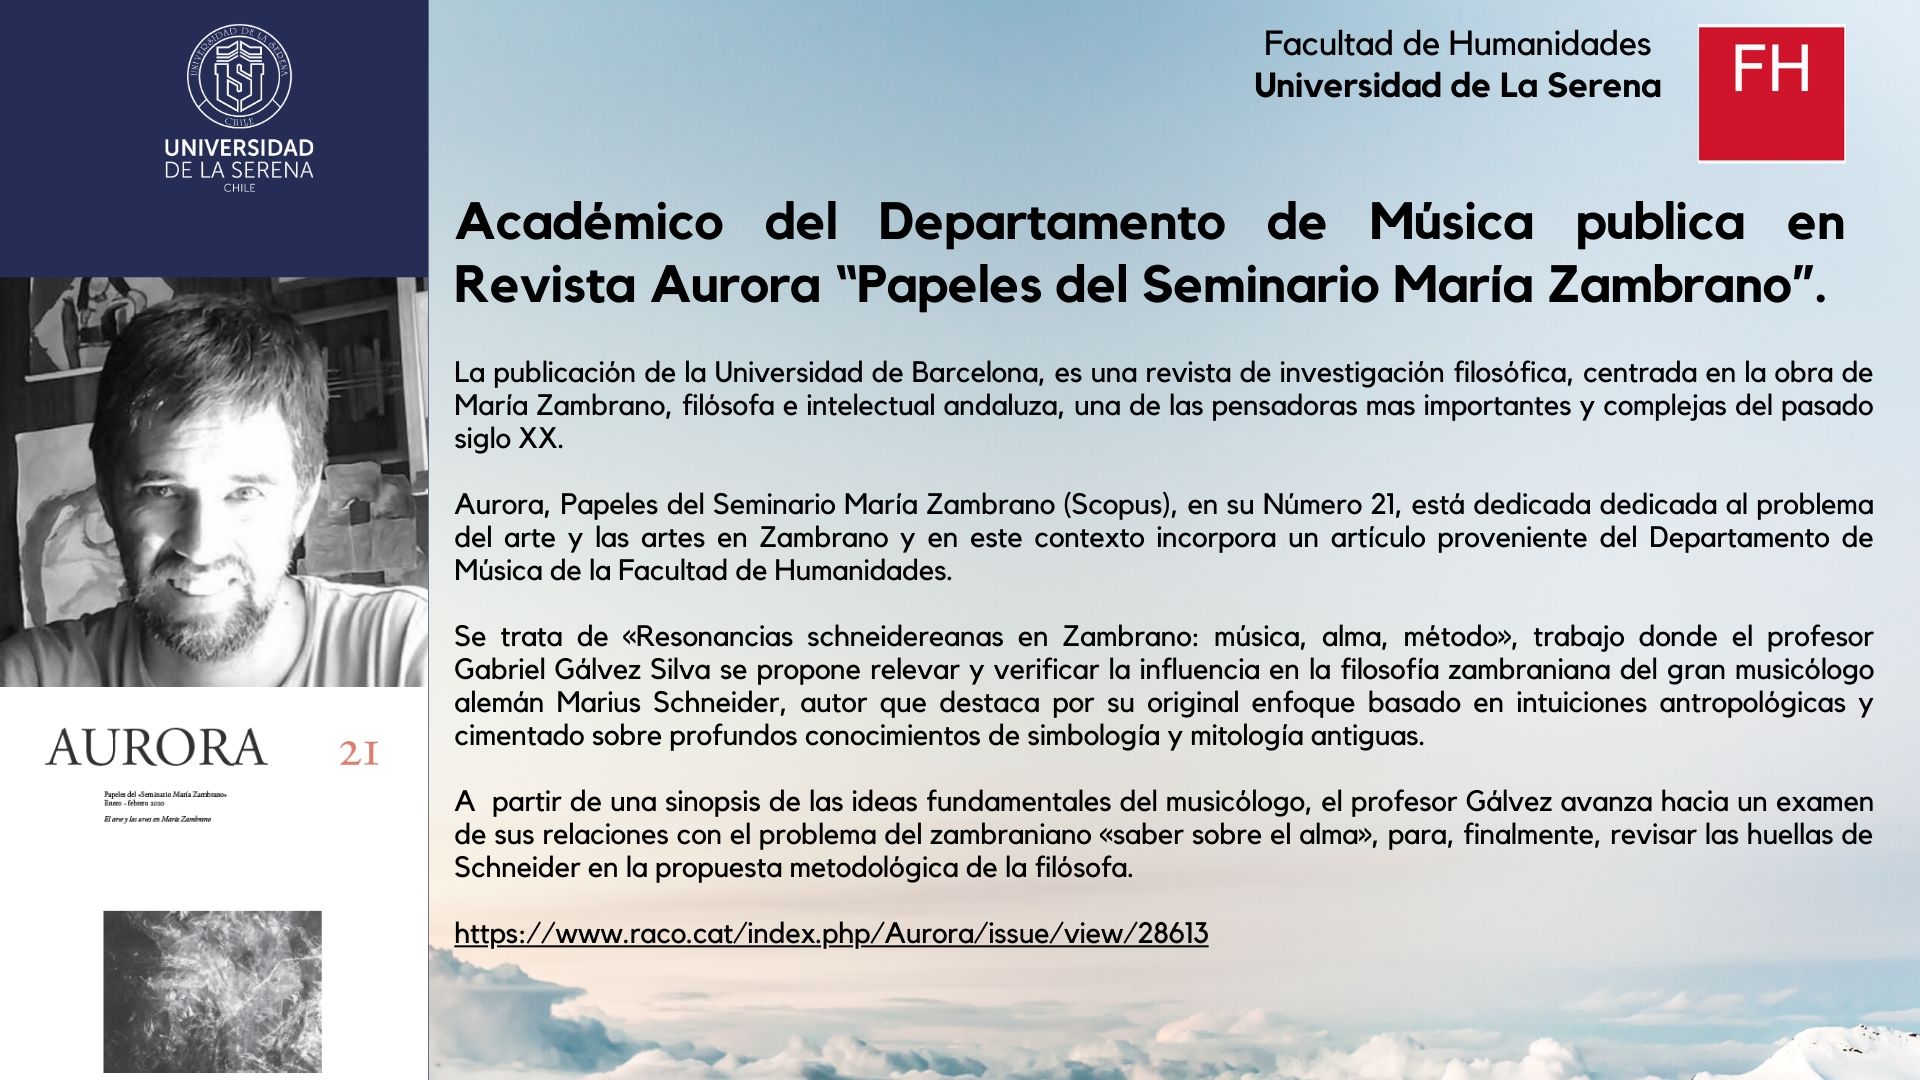 Académico del Departamento de Música publica en Revista Aurora “Papeles del Seminario María Zambrano”